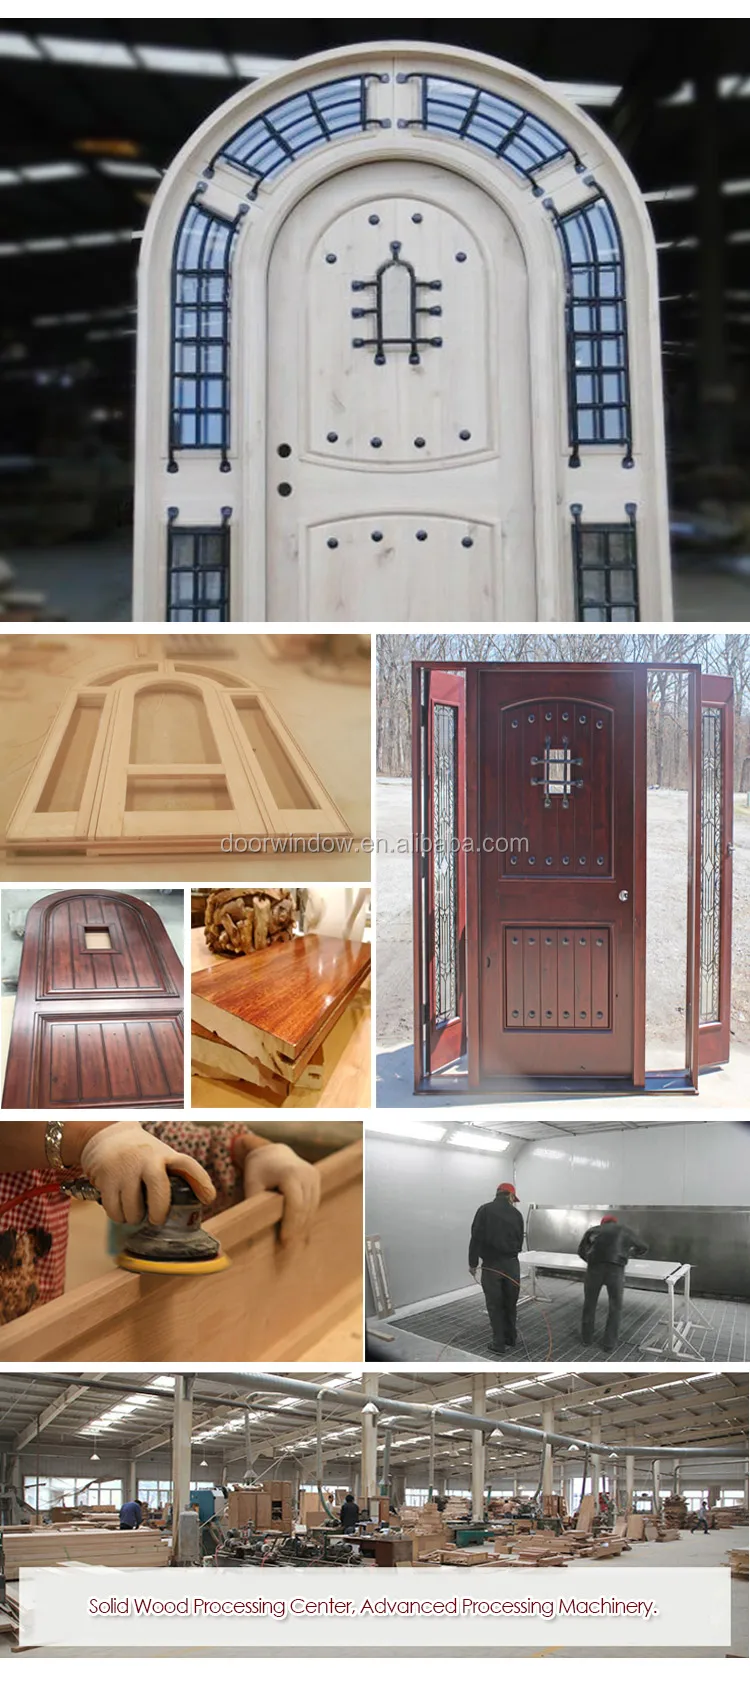 2018 Custom Front Door Knotty Alder Arched Exterior Wood Doors